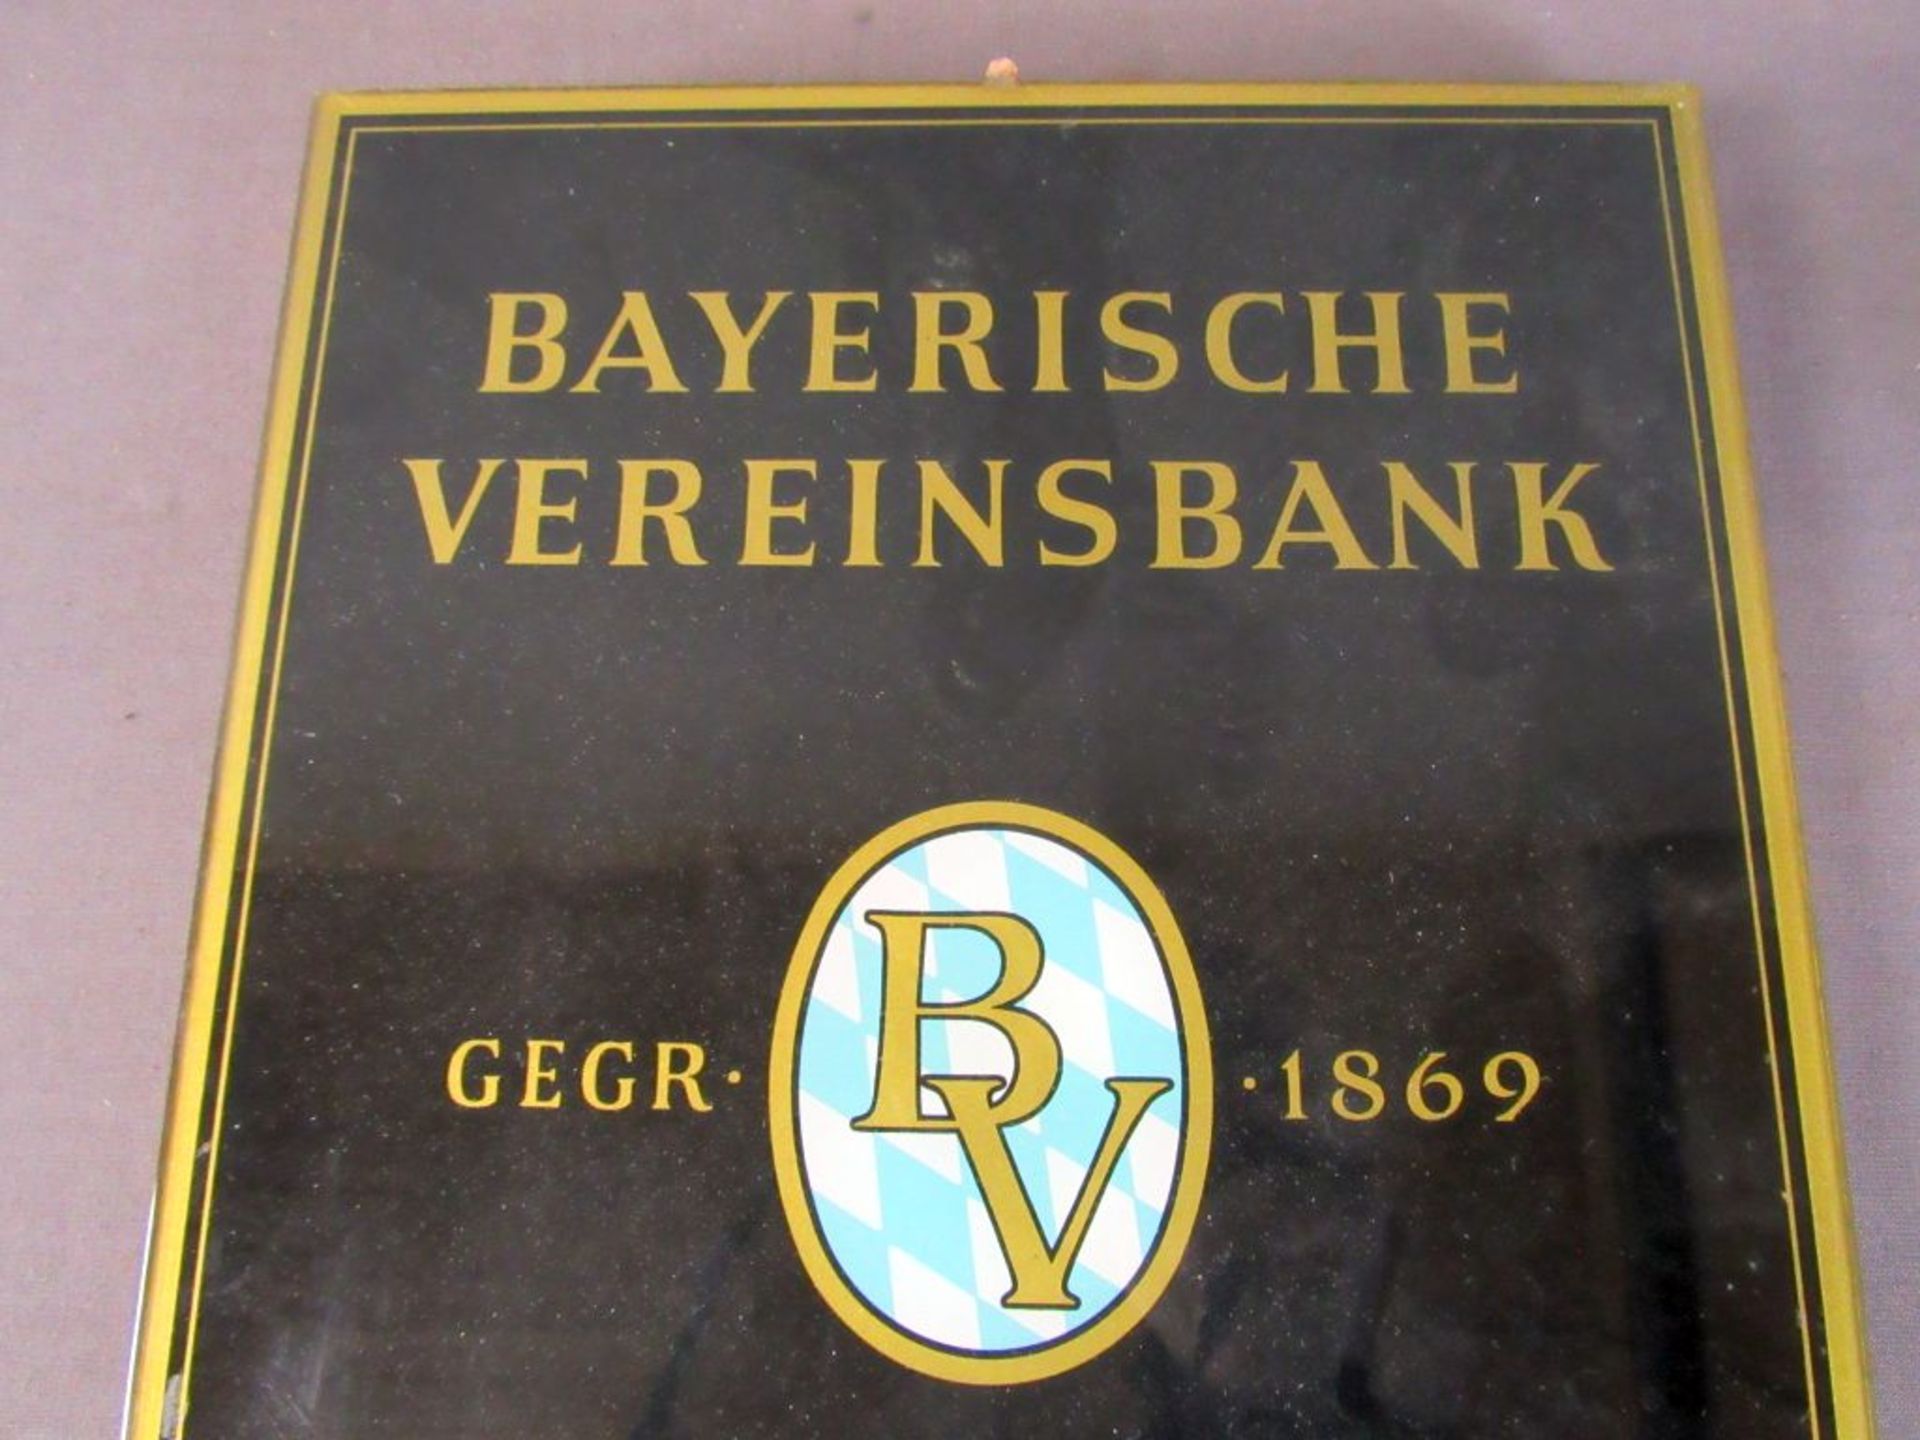 Dauerkalender Bayerische Vereinsbank - Image 2 of 5